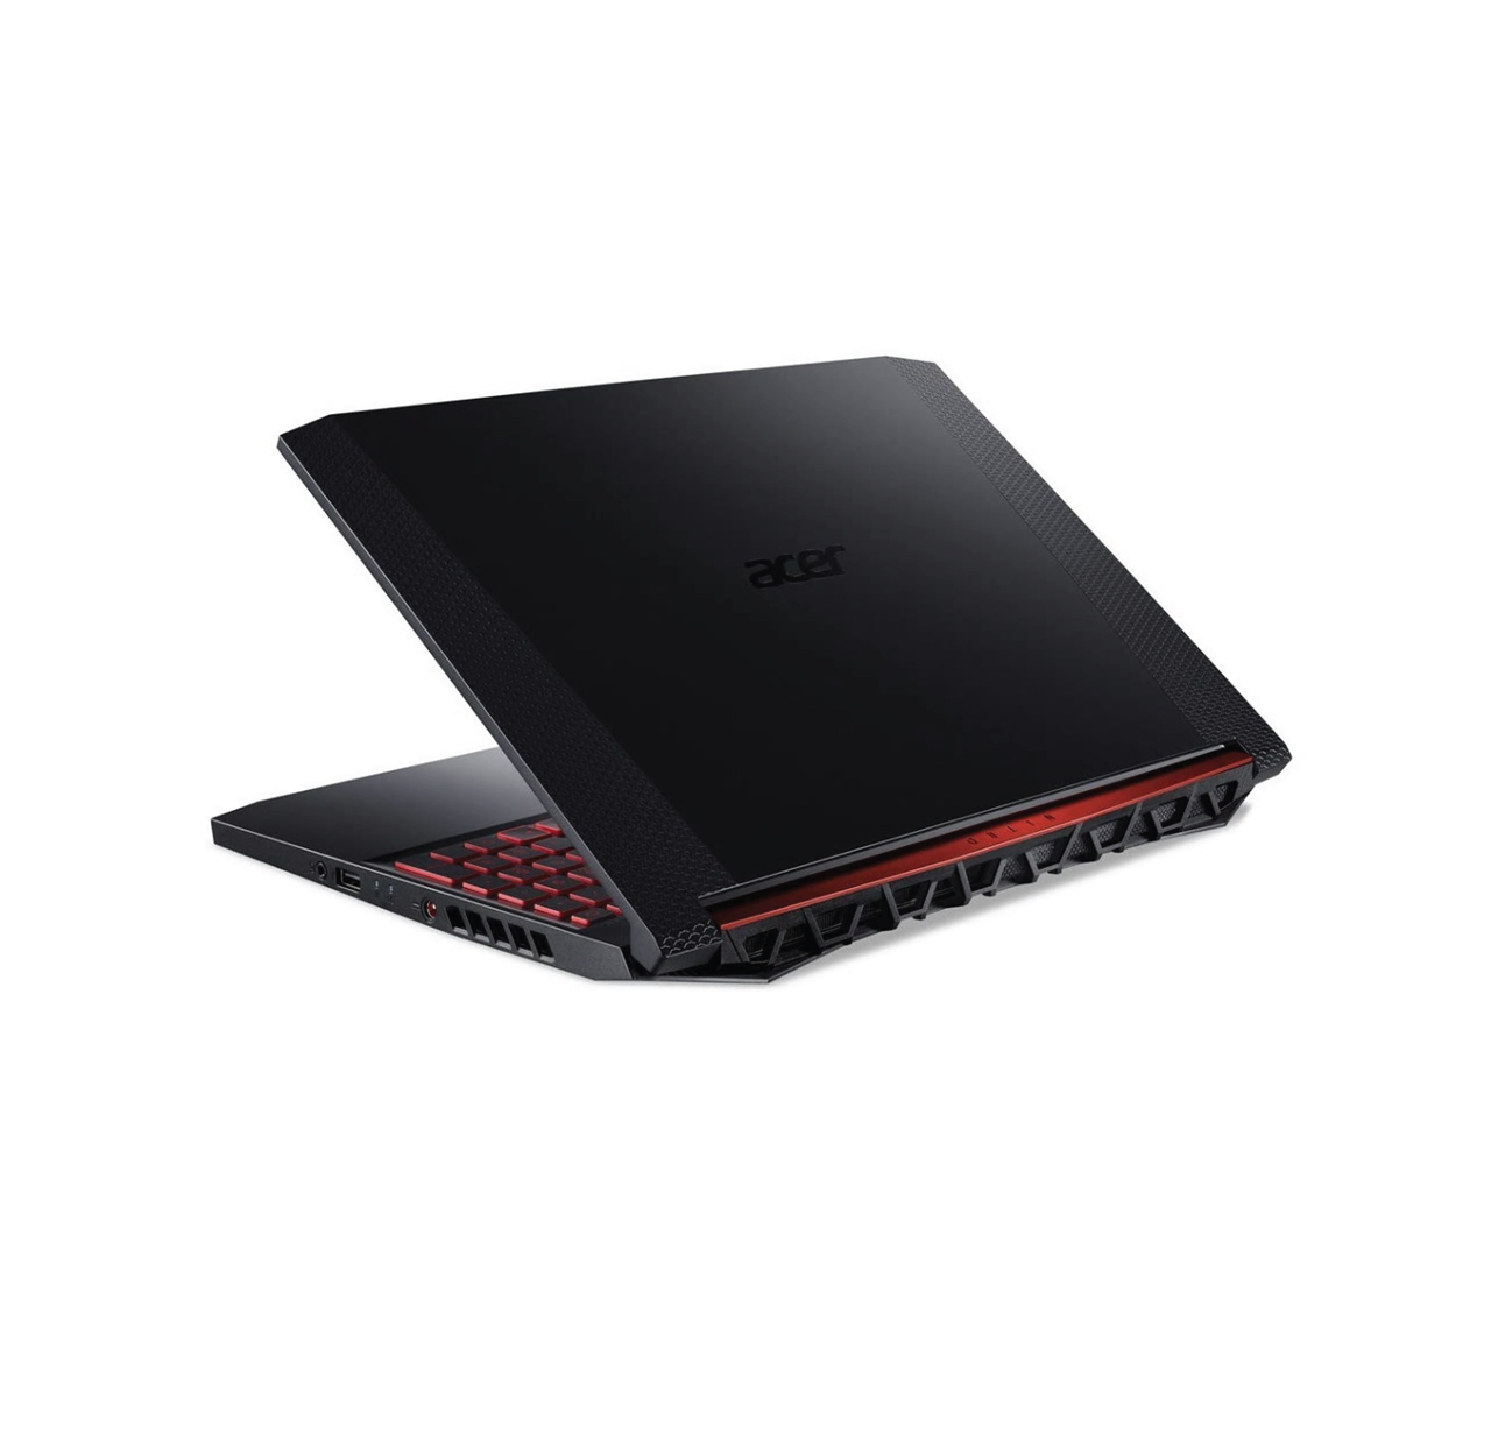 لپ تاپ ایسر 15 اینچ با پک  Nitro 5 AN515-54V : Core i7-10750 / 16GB RAM / 1TB HDD + 256GB SSD / 4GB GTX1650 thumb 471